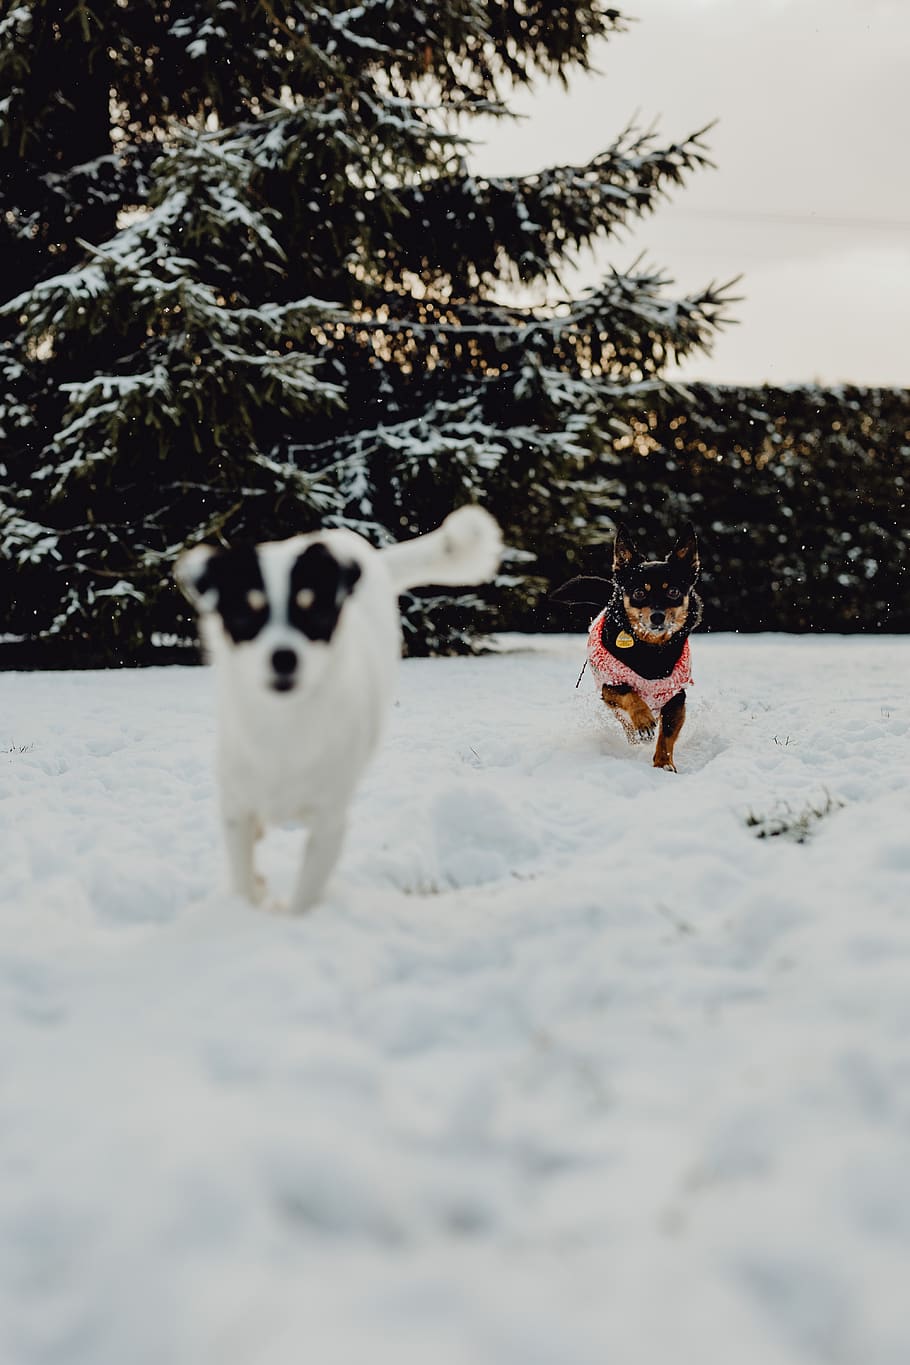 anjing, salju, musim dingin, hewan peliharaan, hewan, lucu, bermain, menyenangkan, anak anjing, Kecil